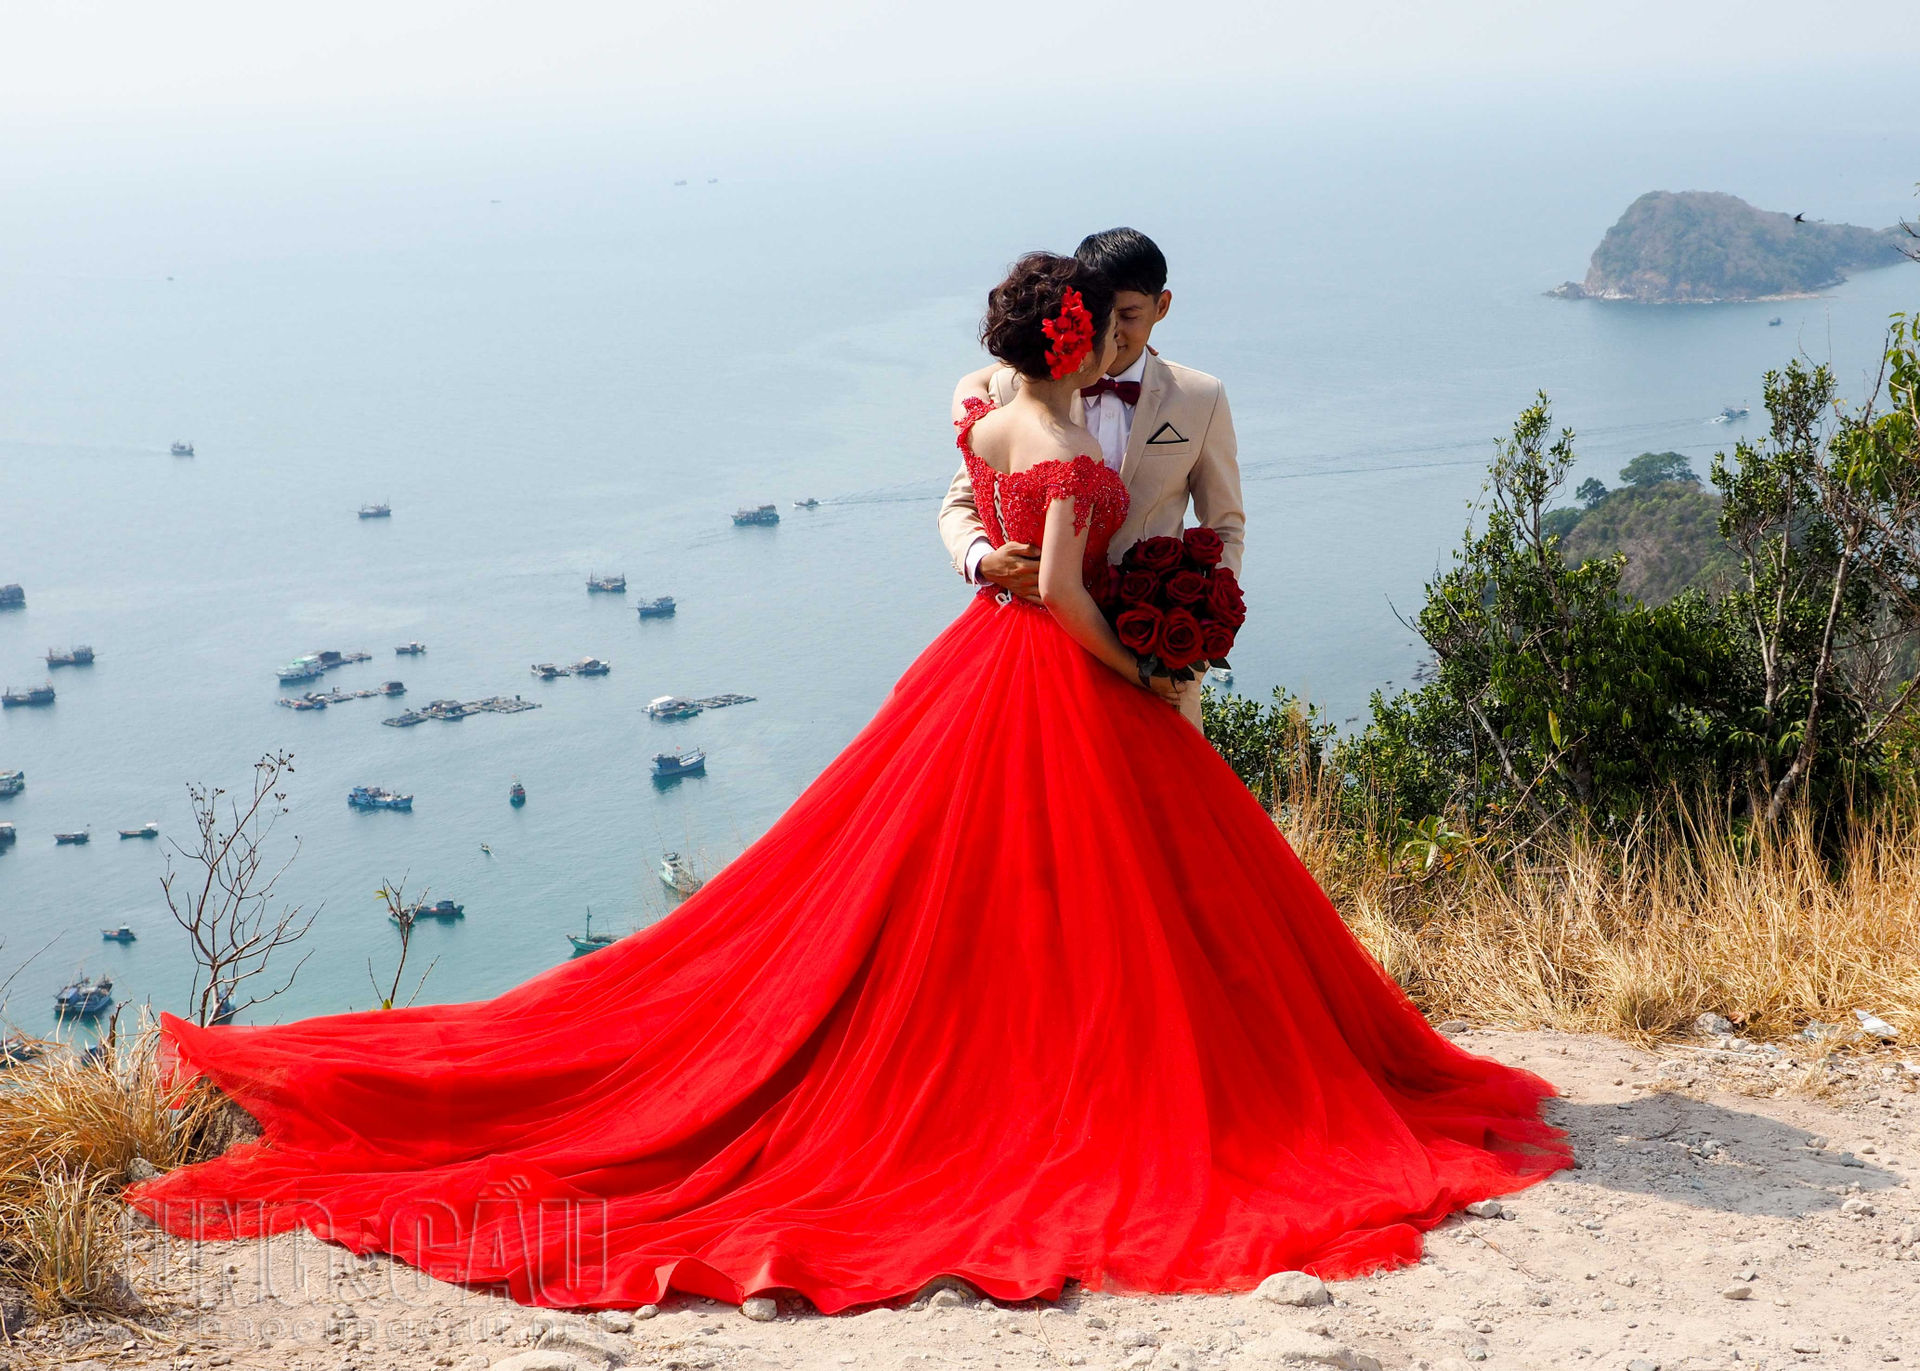 Không chỉ có du khách, cảnh đẹp Nam Du còn lôi cuốn rất nhiều cặp đôi đến đây chụp ảnh cưới.